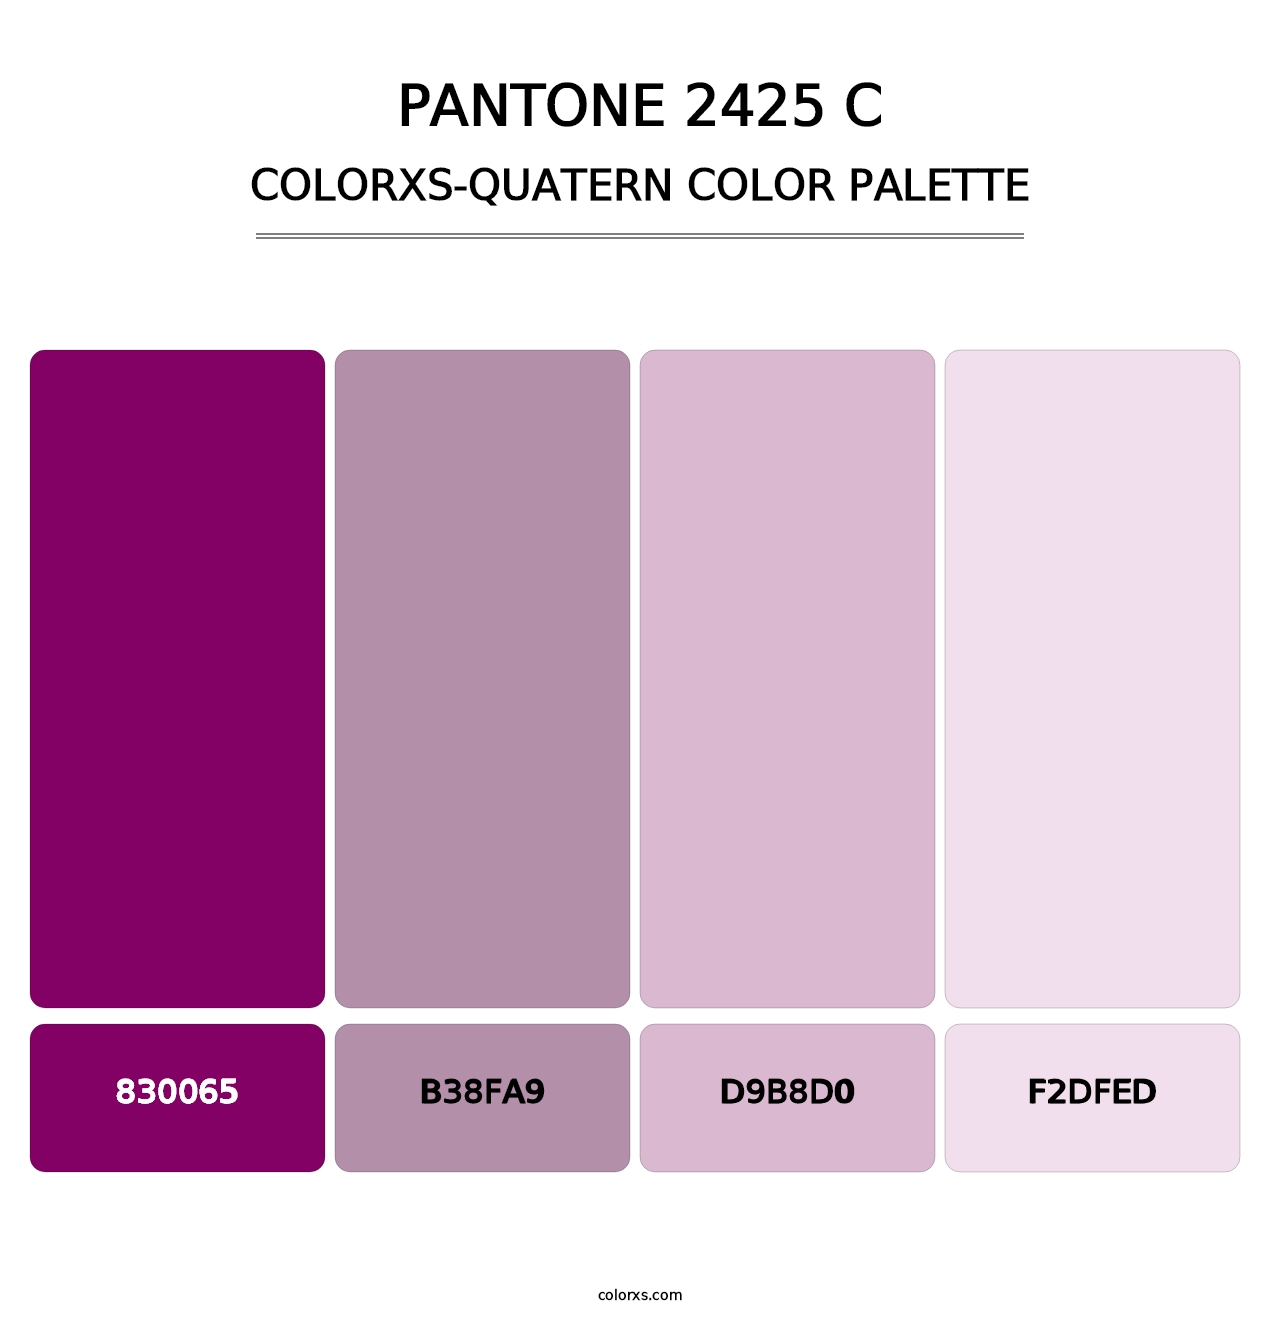 PANTONE 2425 C - Colorxs Quatern Palette